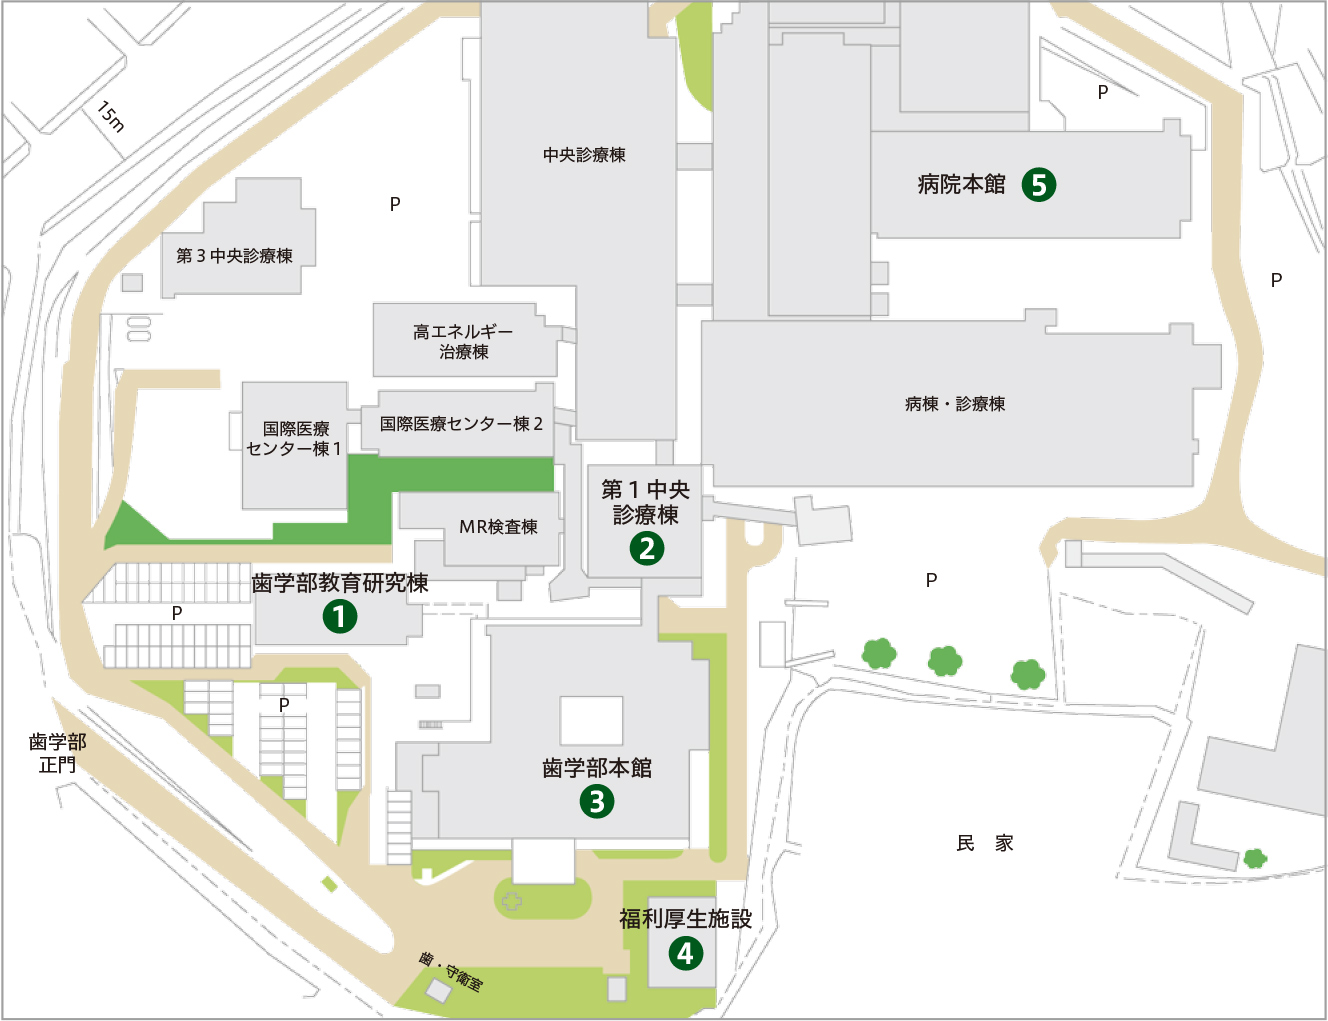 坂本地区キャンパスマップ